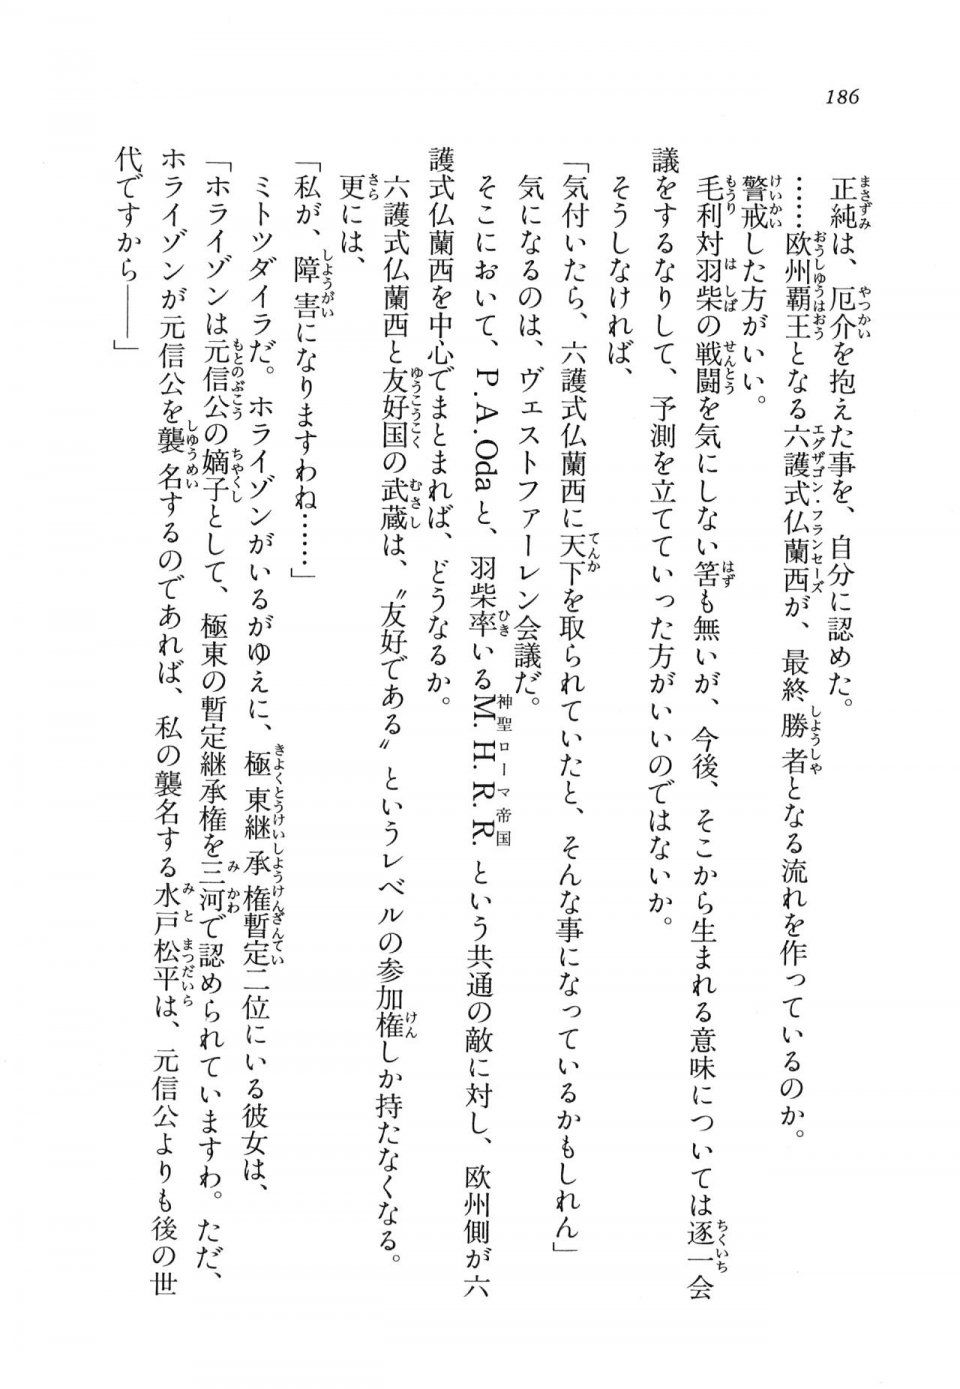 Kyoukai Senjou no Horizon LN Vol 11(5A) - Photo #186